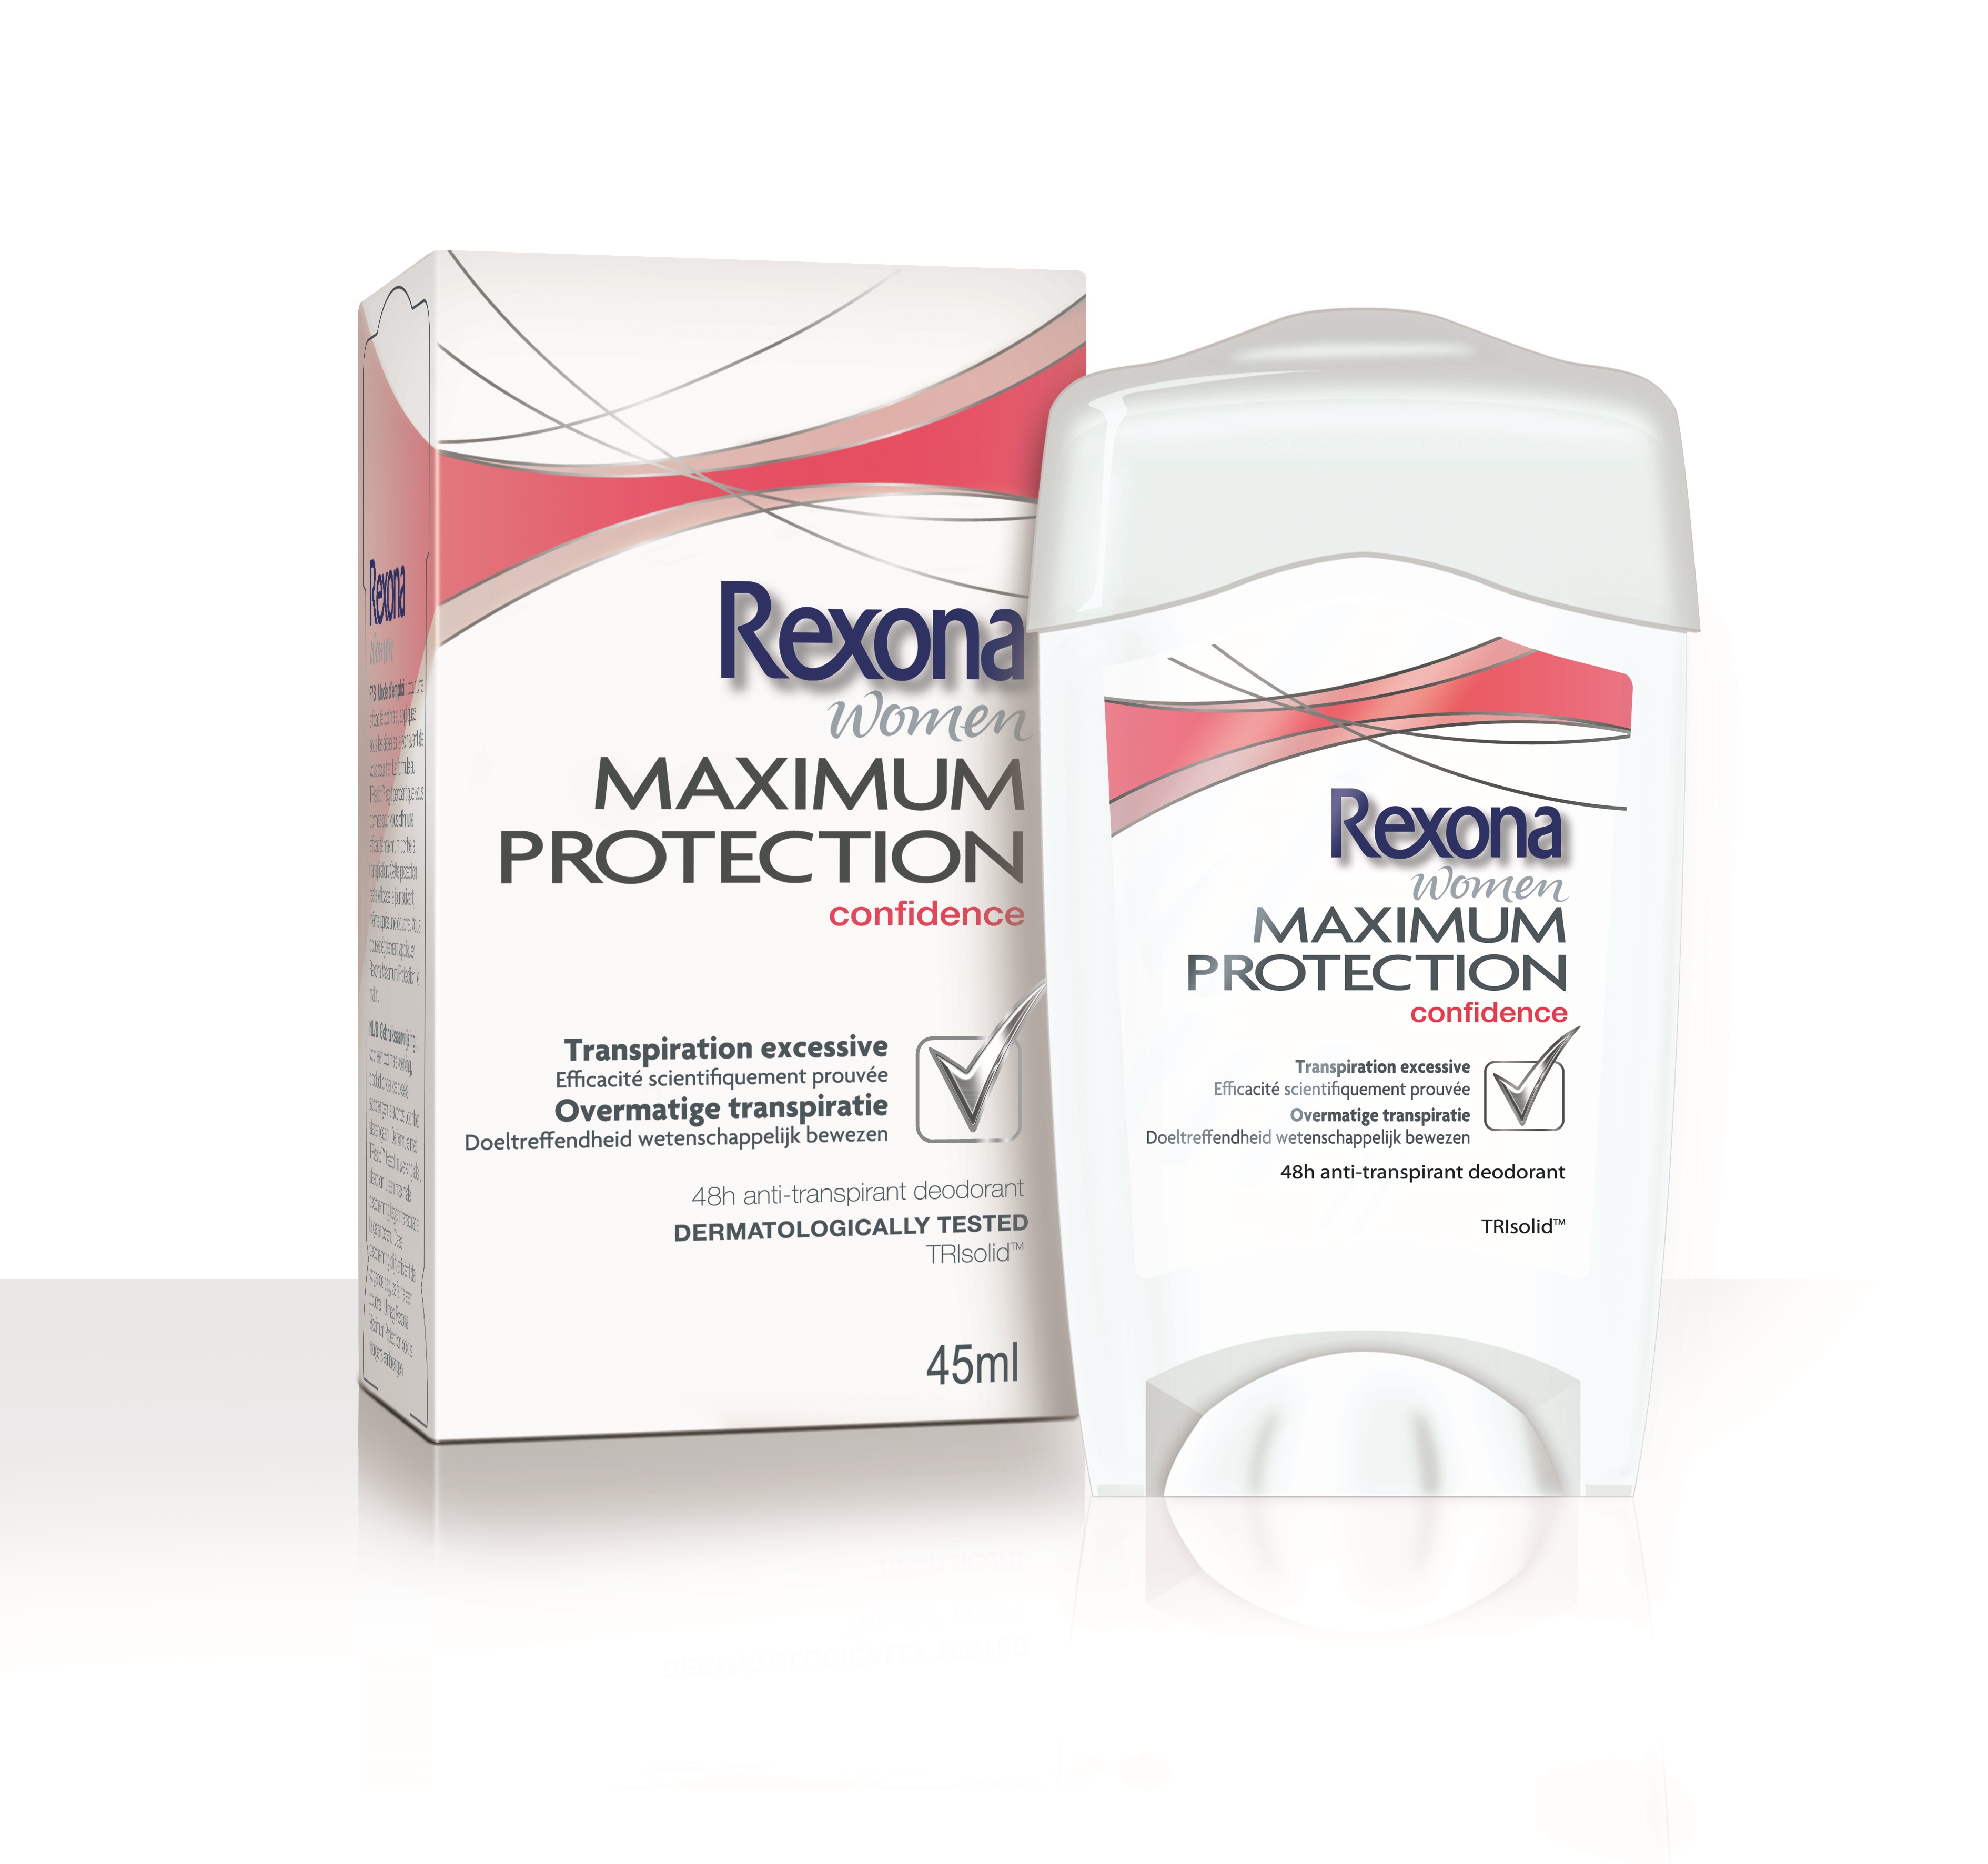 Rexona Maximum protection